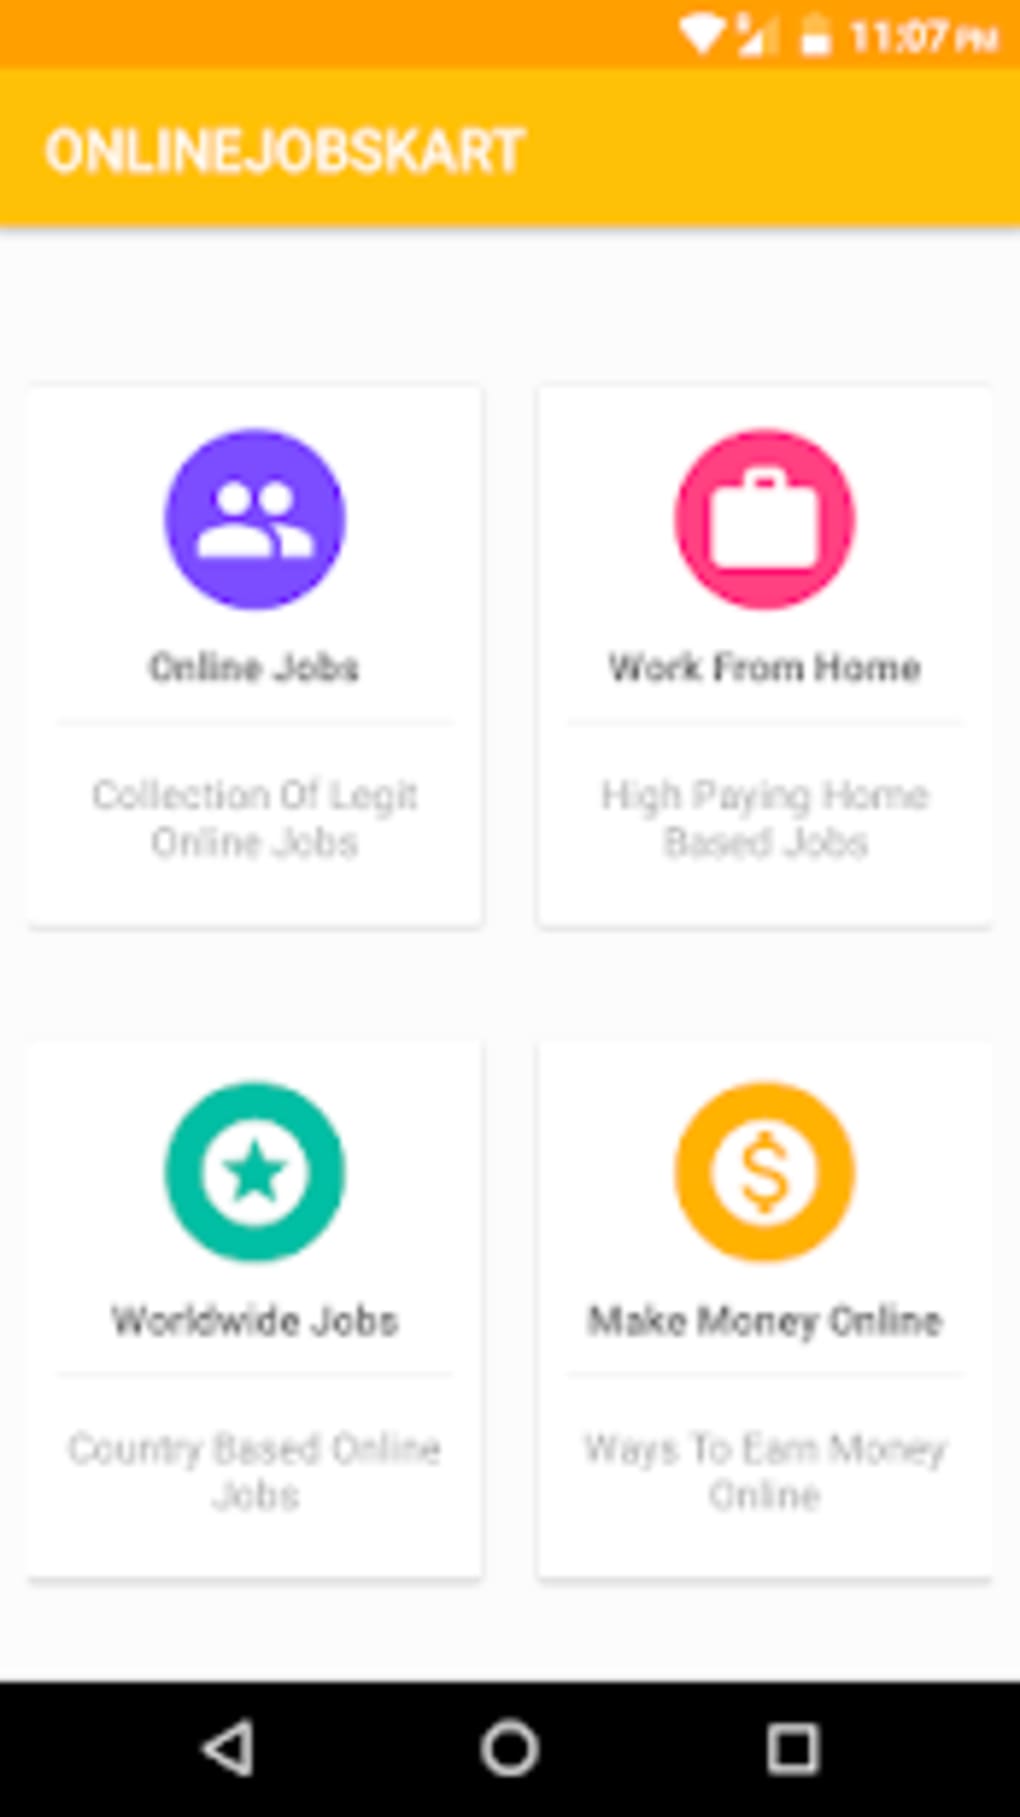 Onlinejobskart Money Making App Wor!   k From Home For Android Download - onlinejobskart money making app work from home